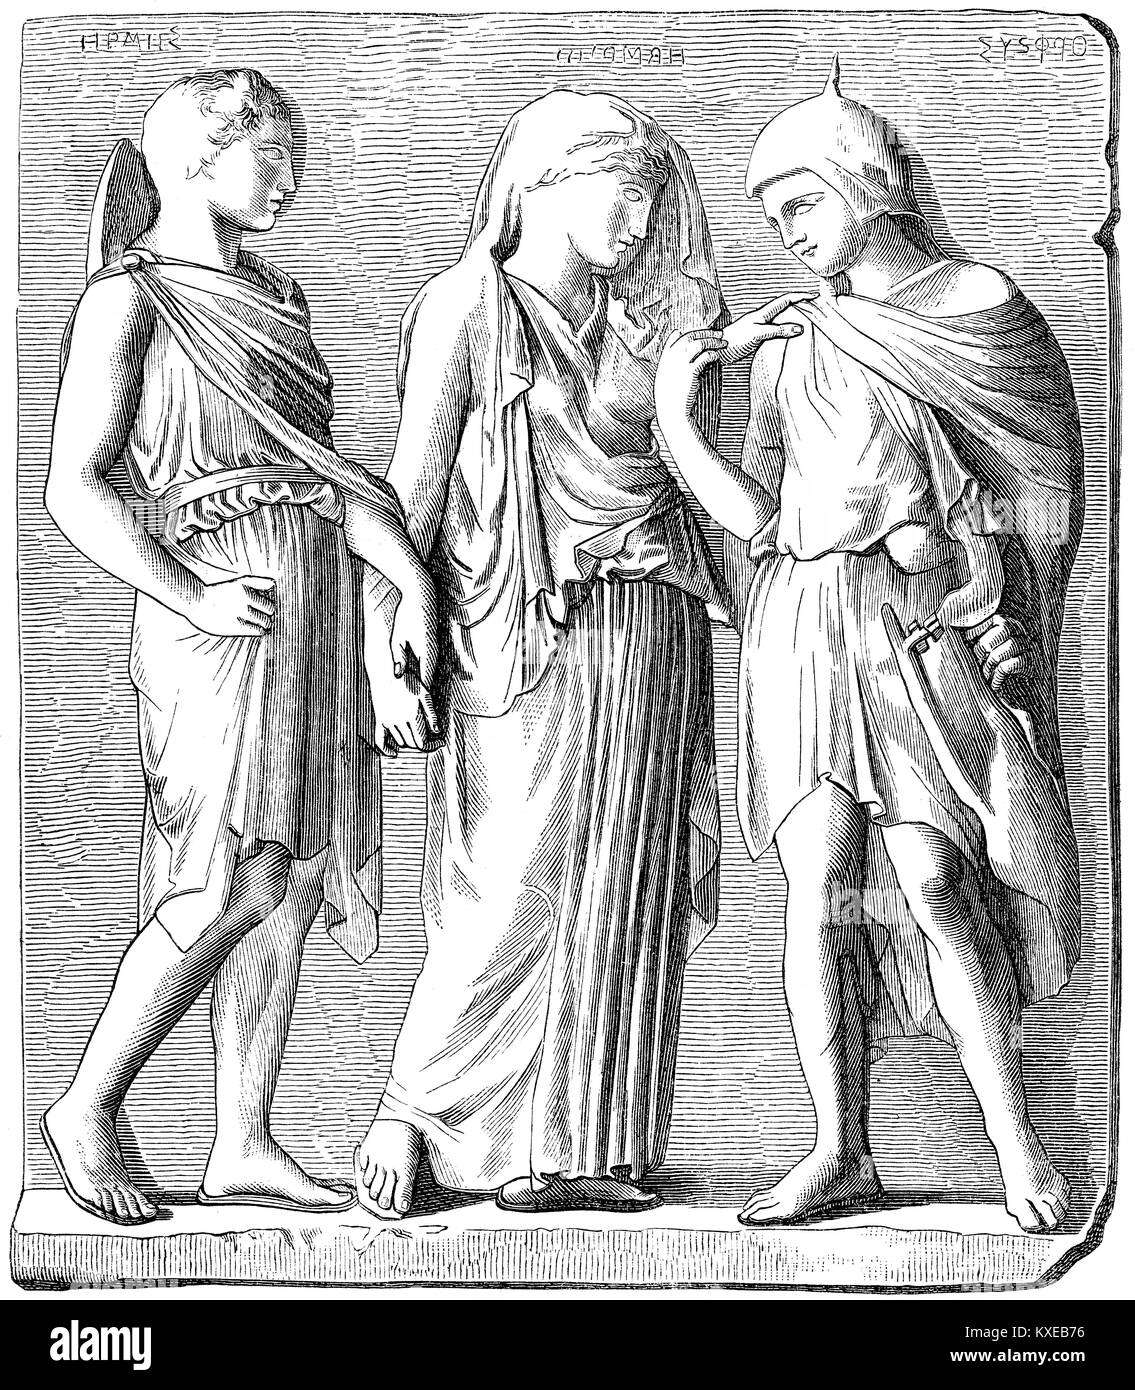 Hermes, Eurydice e Orfeo, mitologia greca Foto Stock